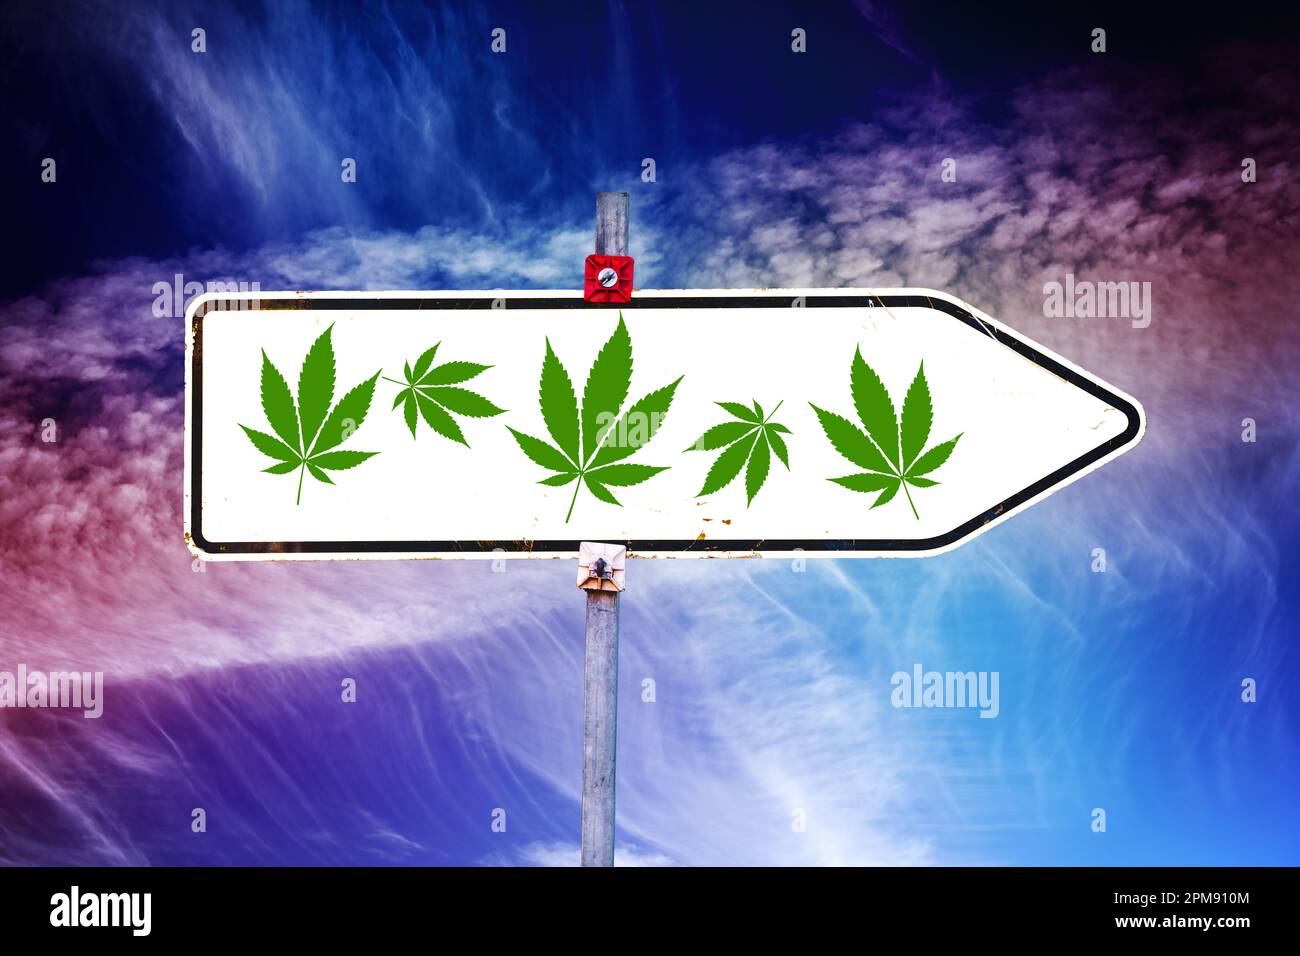 FOTOMONTAGE, Wegweiser mit Cannabisblättern, Symbolfoton Cannabis-Legalisierung Foto Stock